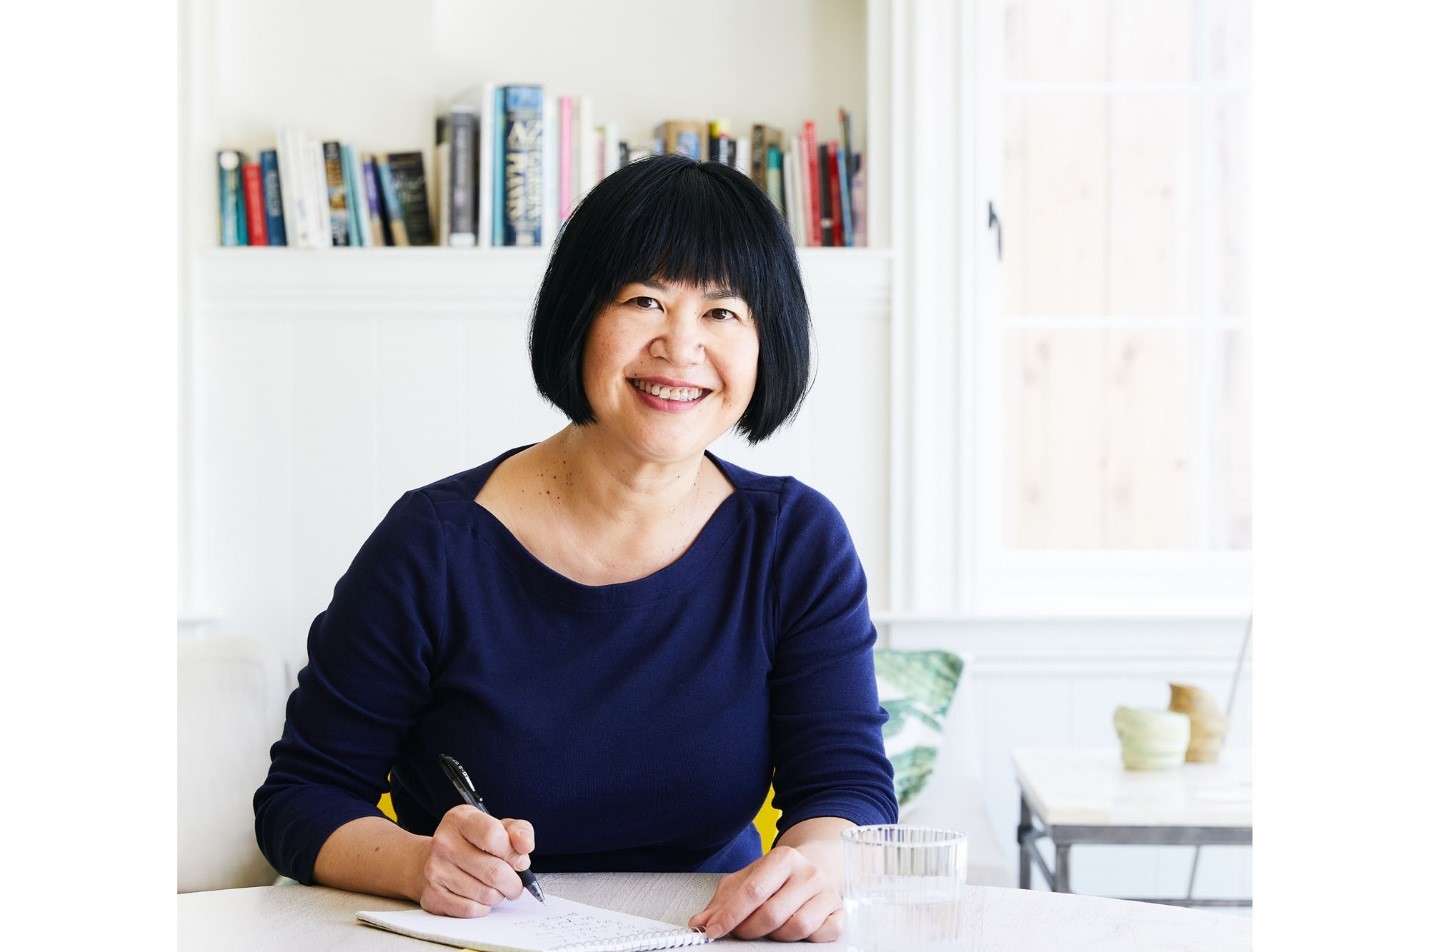 Trò chuyện cùng Andrea Nguyễn - nữ đầu bếp người Việt tự viết sách dạy nấu phở - Ảnh 2.